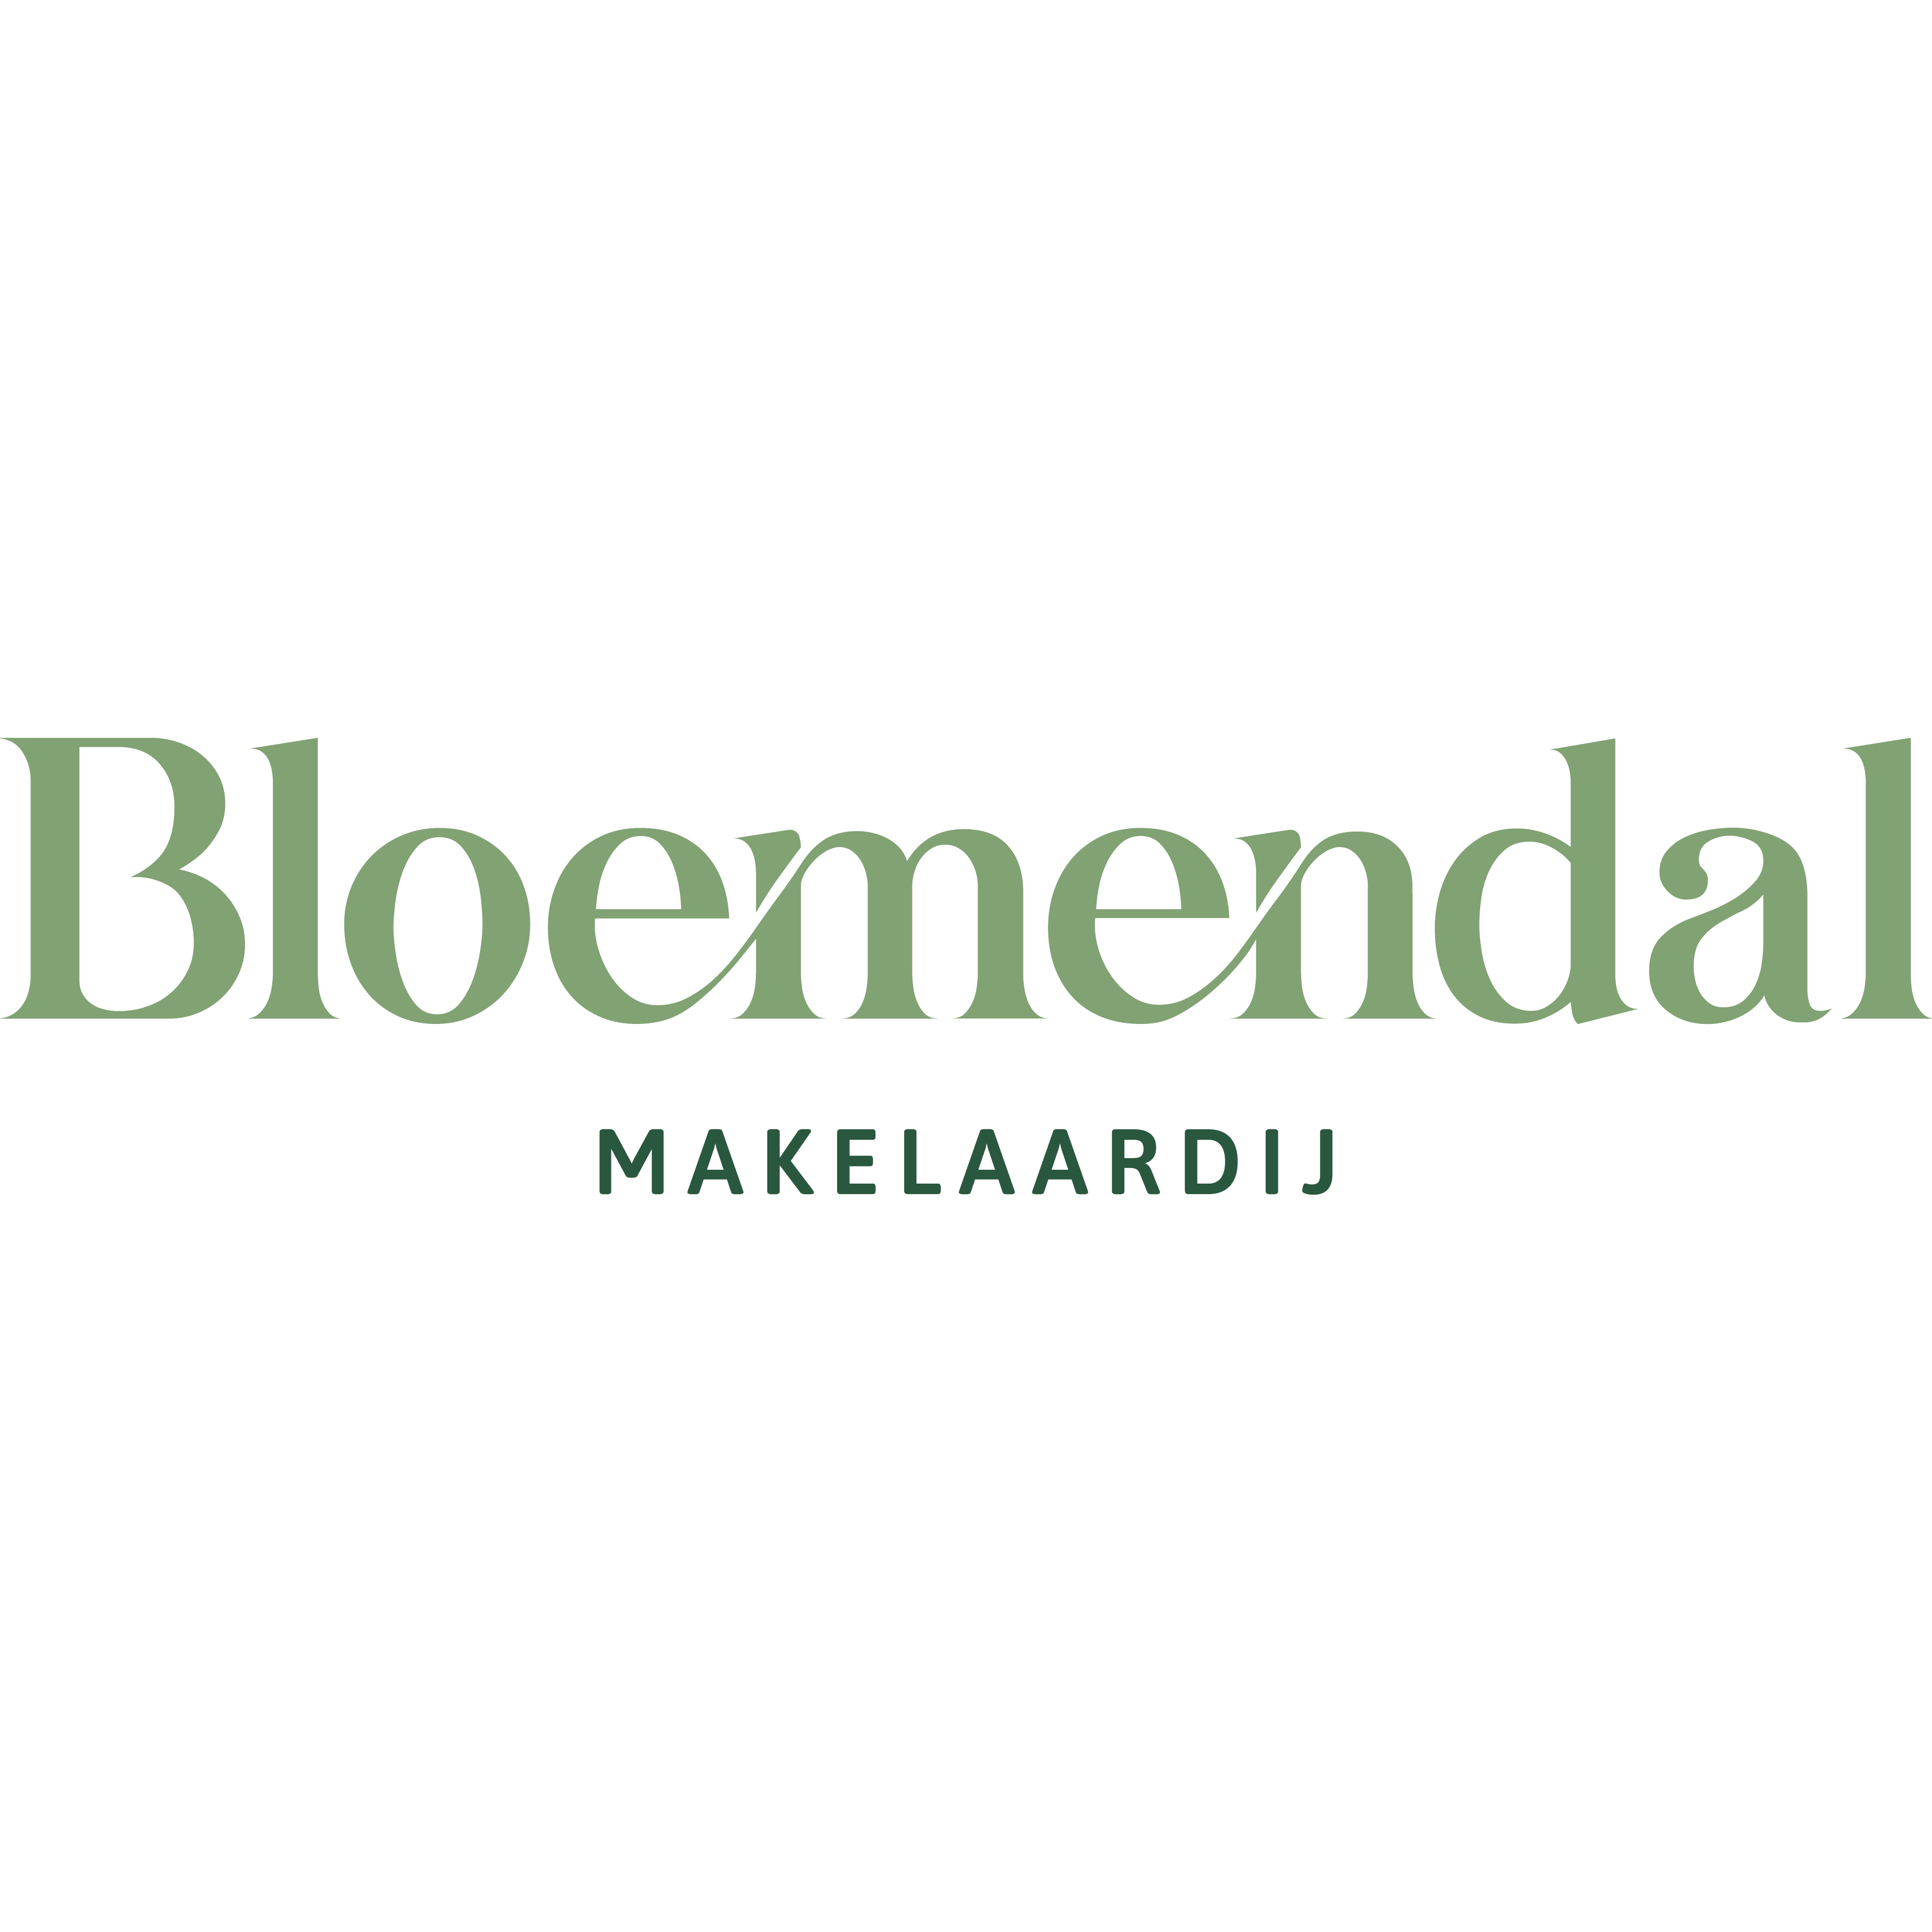 Bloemendal Makelaardij Logo